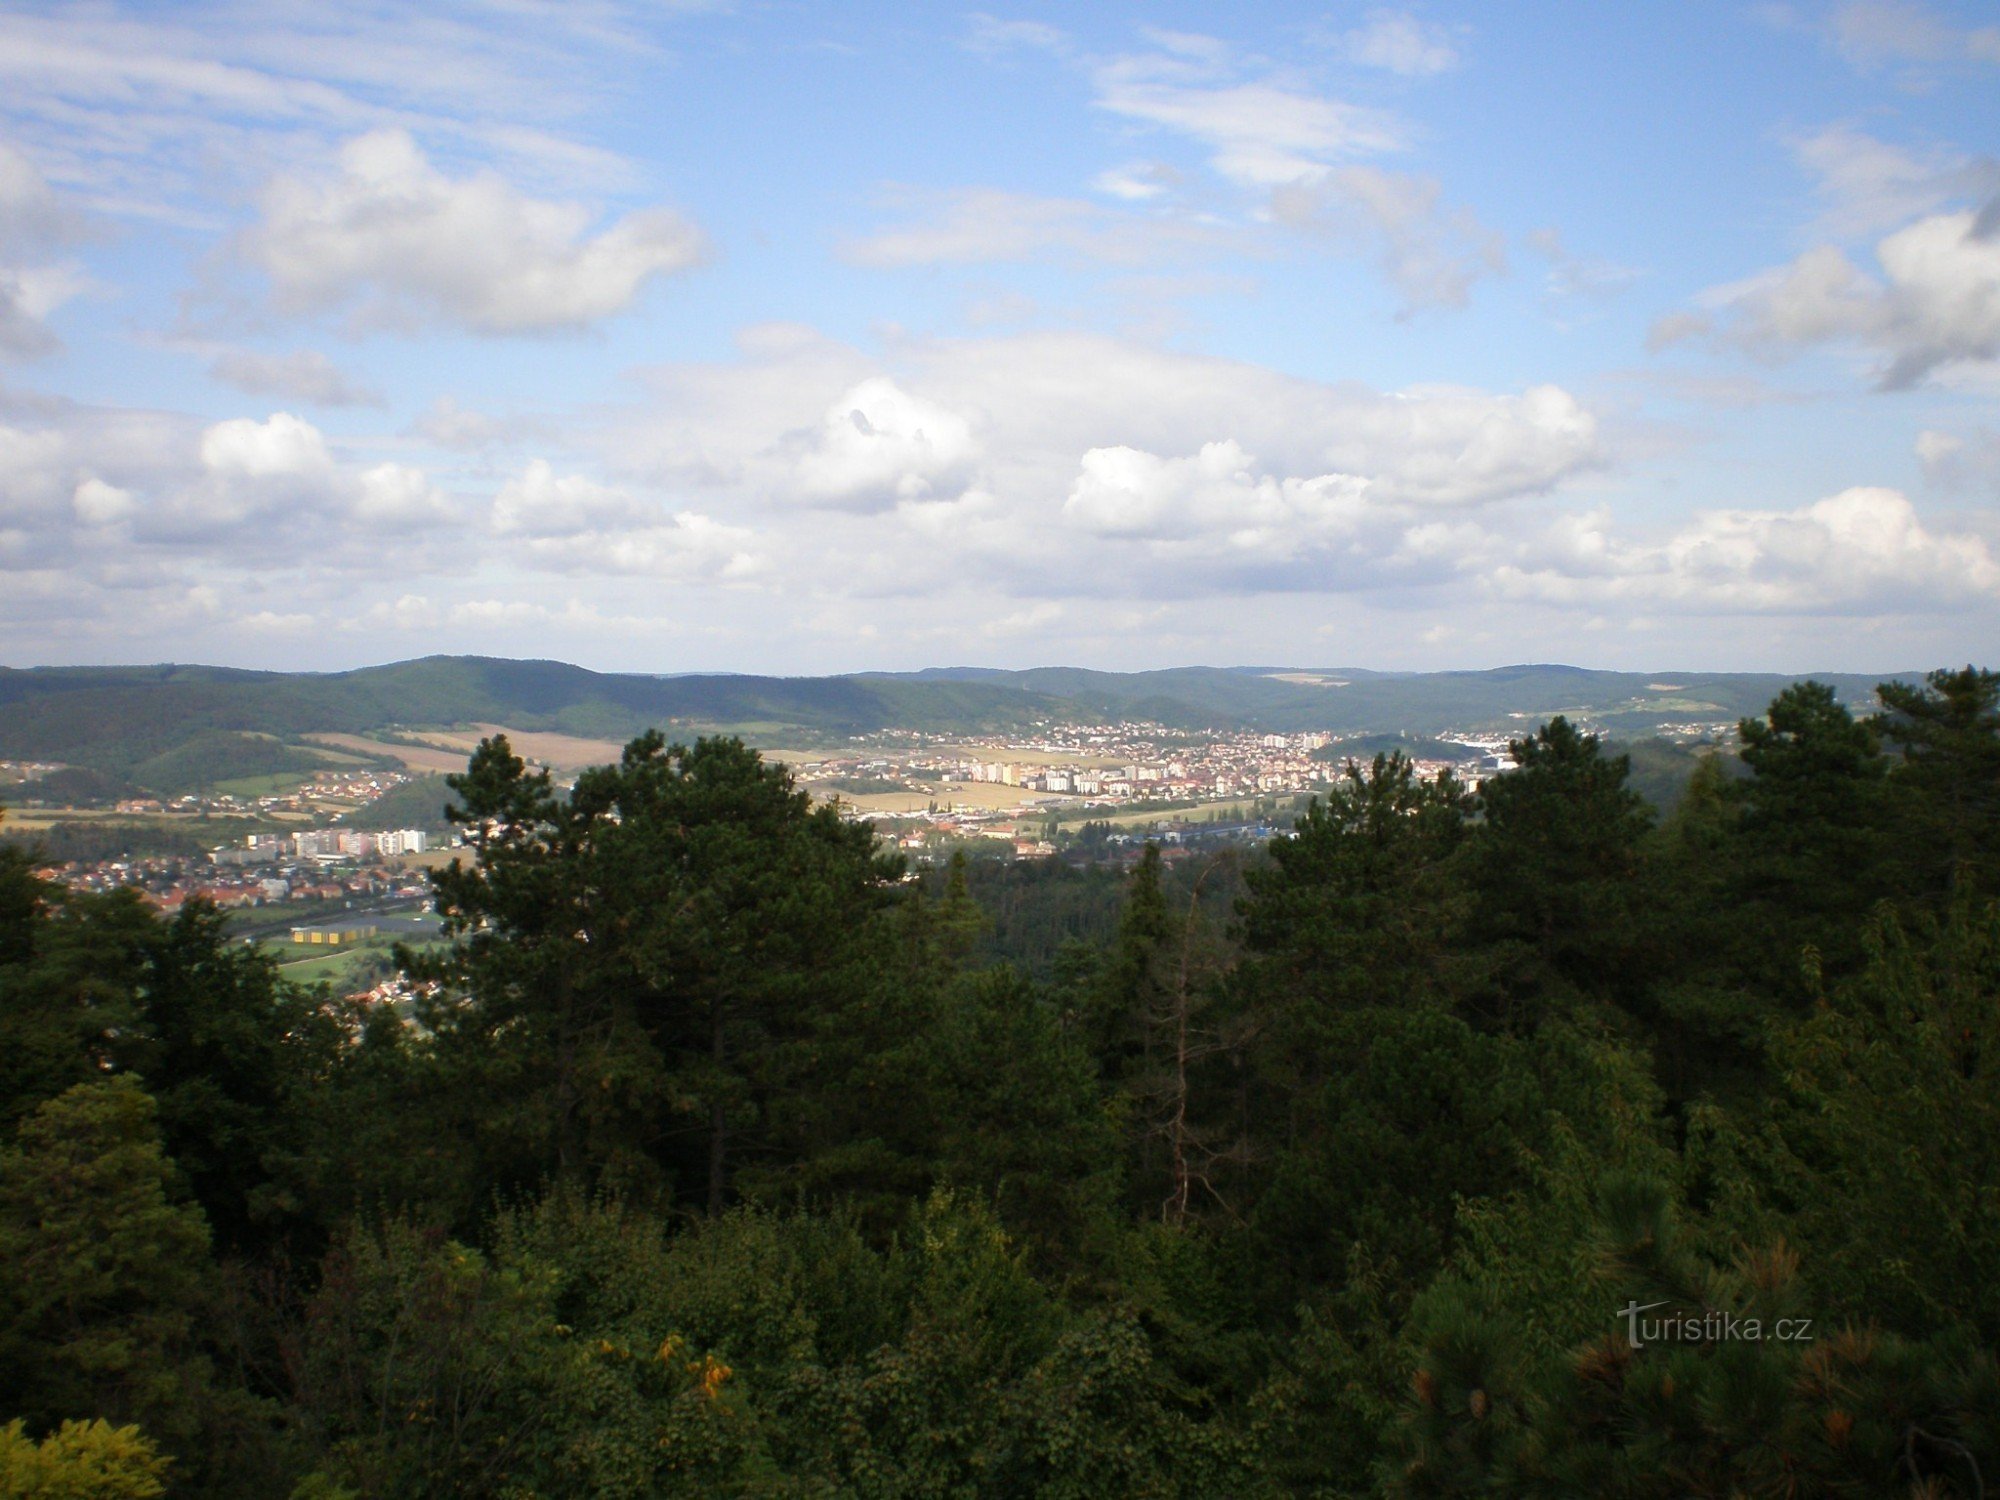 Udsigt fra Koukola-bjerget mod N (retning Beroun og Králův Dvůr)